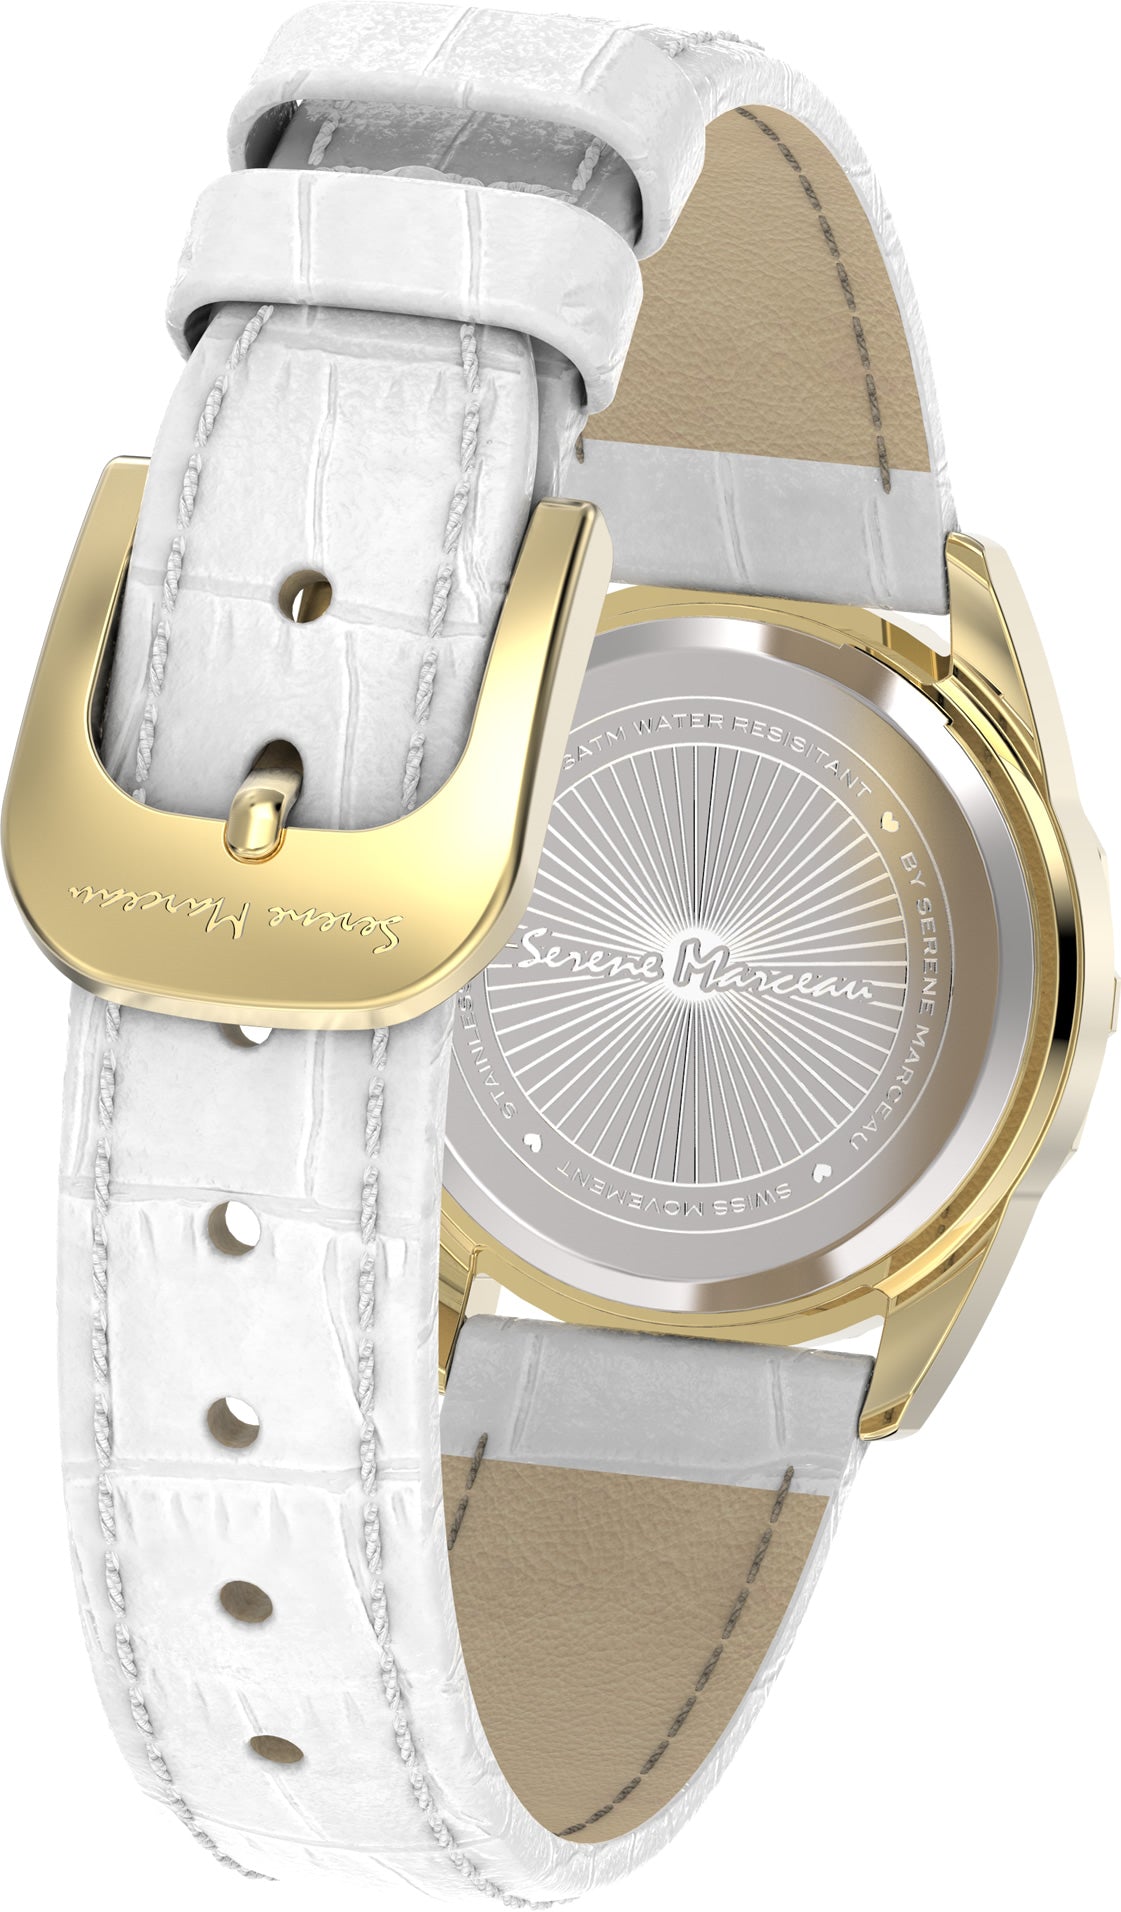 SERENE MARCEAU S010.06 Café de la Paix 29mm White dial Ladies Diamond watch 😉